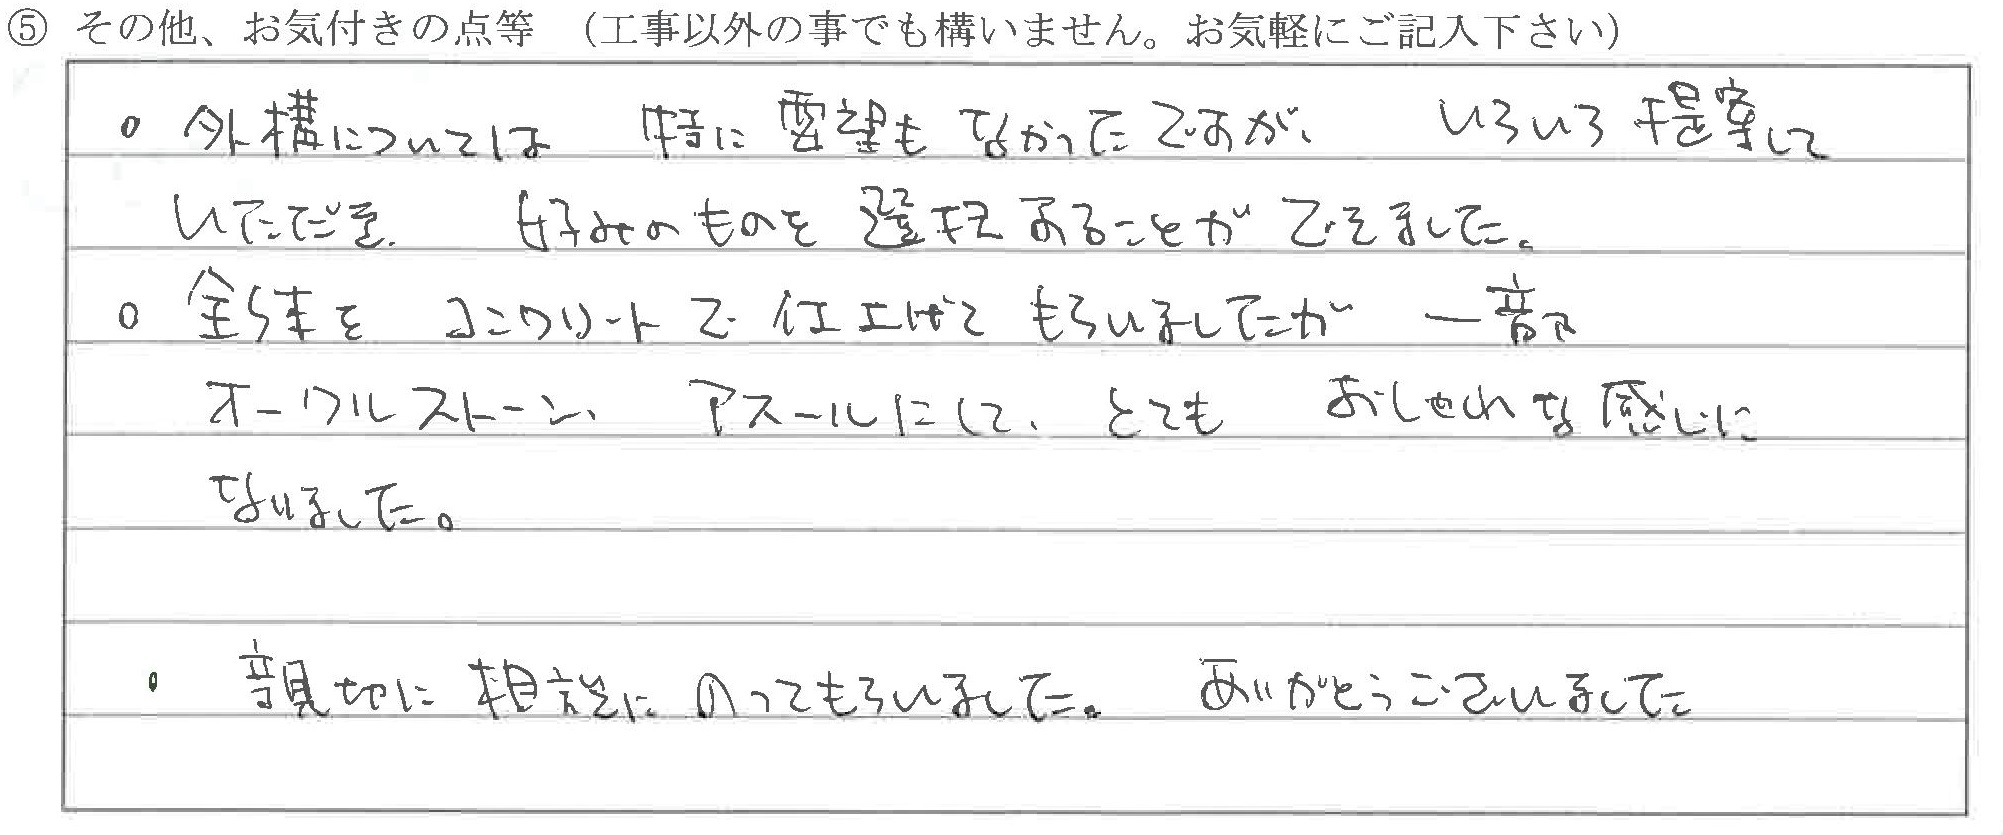 新潟県糸魚川市Ｉ様に頂いた外構工事についてのお気づきの点がありましたら、お聞かせ下さい。というご質問について「エクステリア工事」というお声についての画像